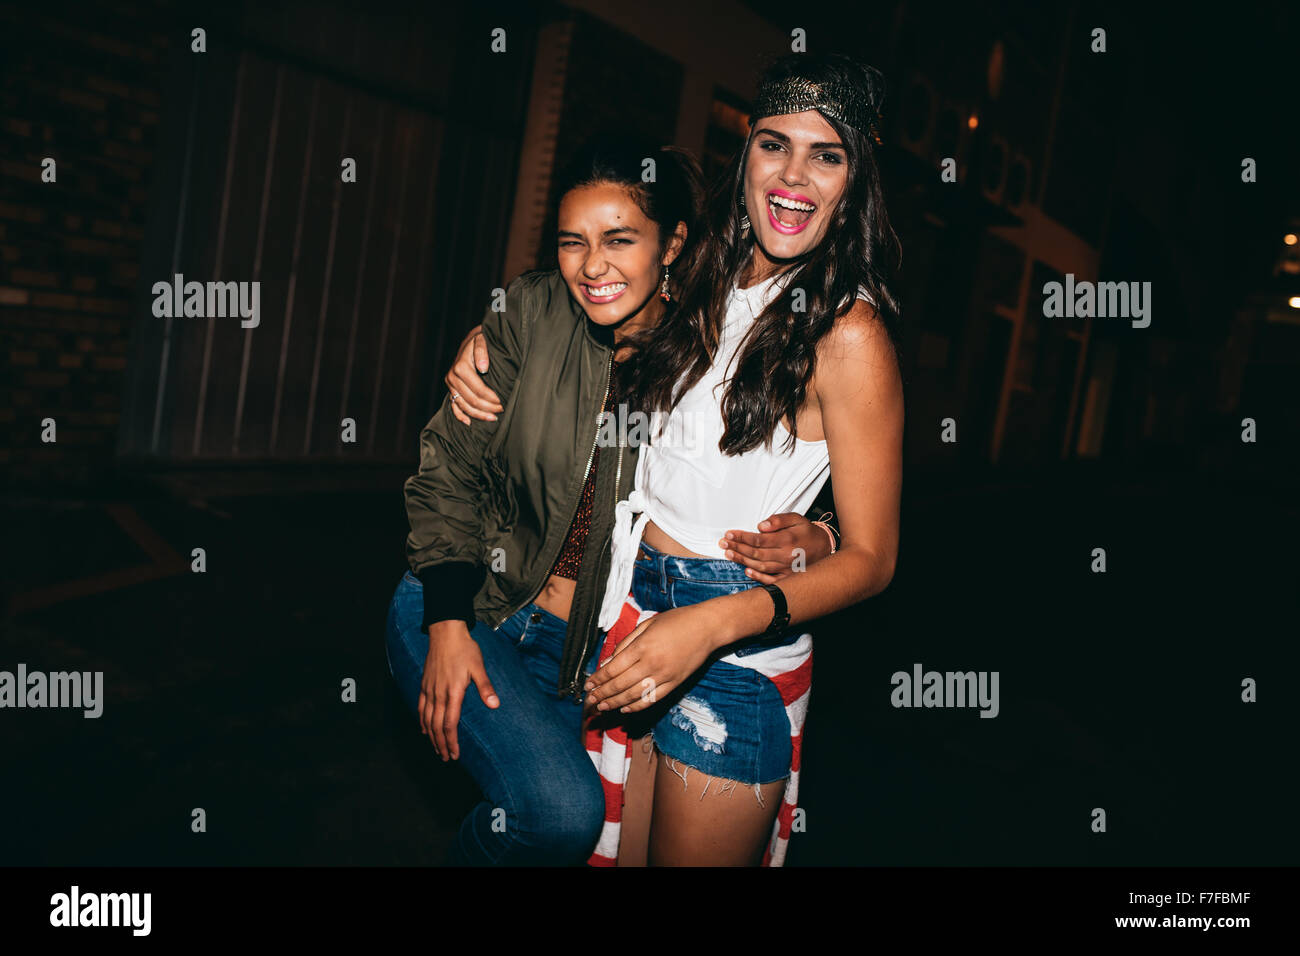 Porträt von zwei jungen Freundinnen Spaß im Freien. Frauen in Party im freien Abend genießen. Stockfoto